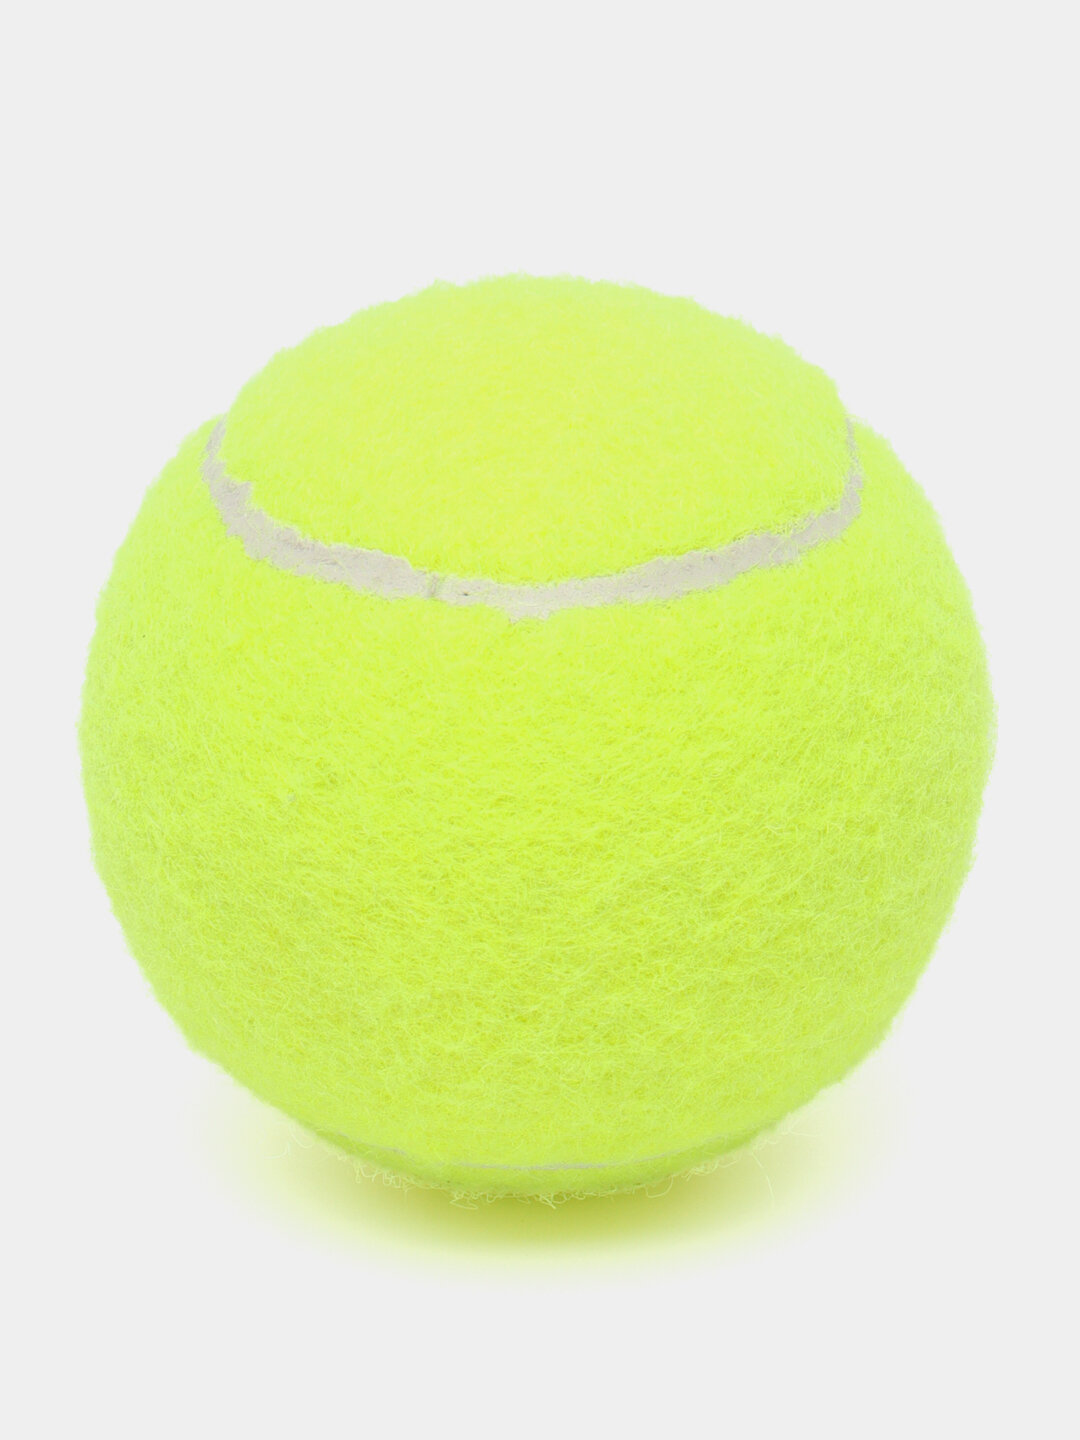 Мяч для большого тенниса, для игры с питомцами, массажа и стирки вещей